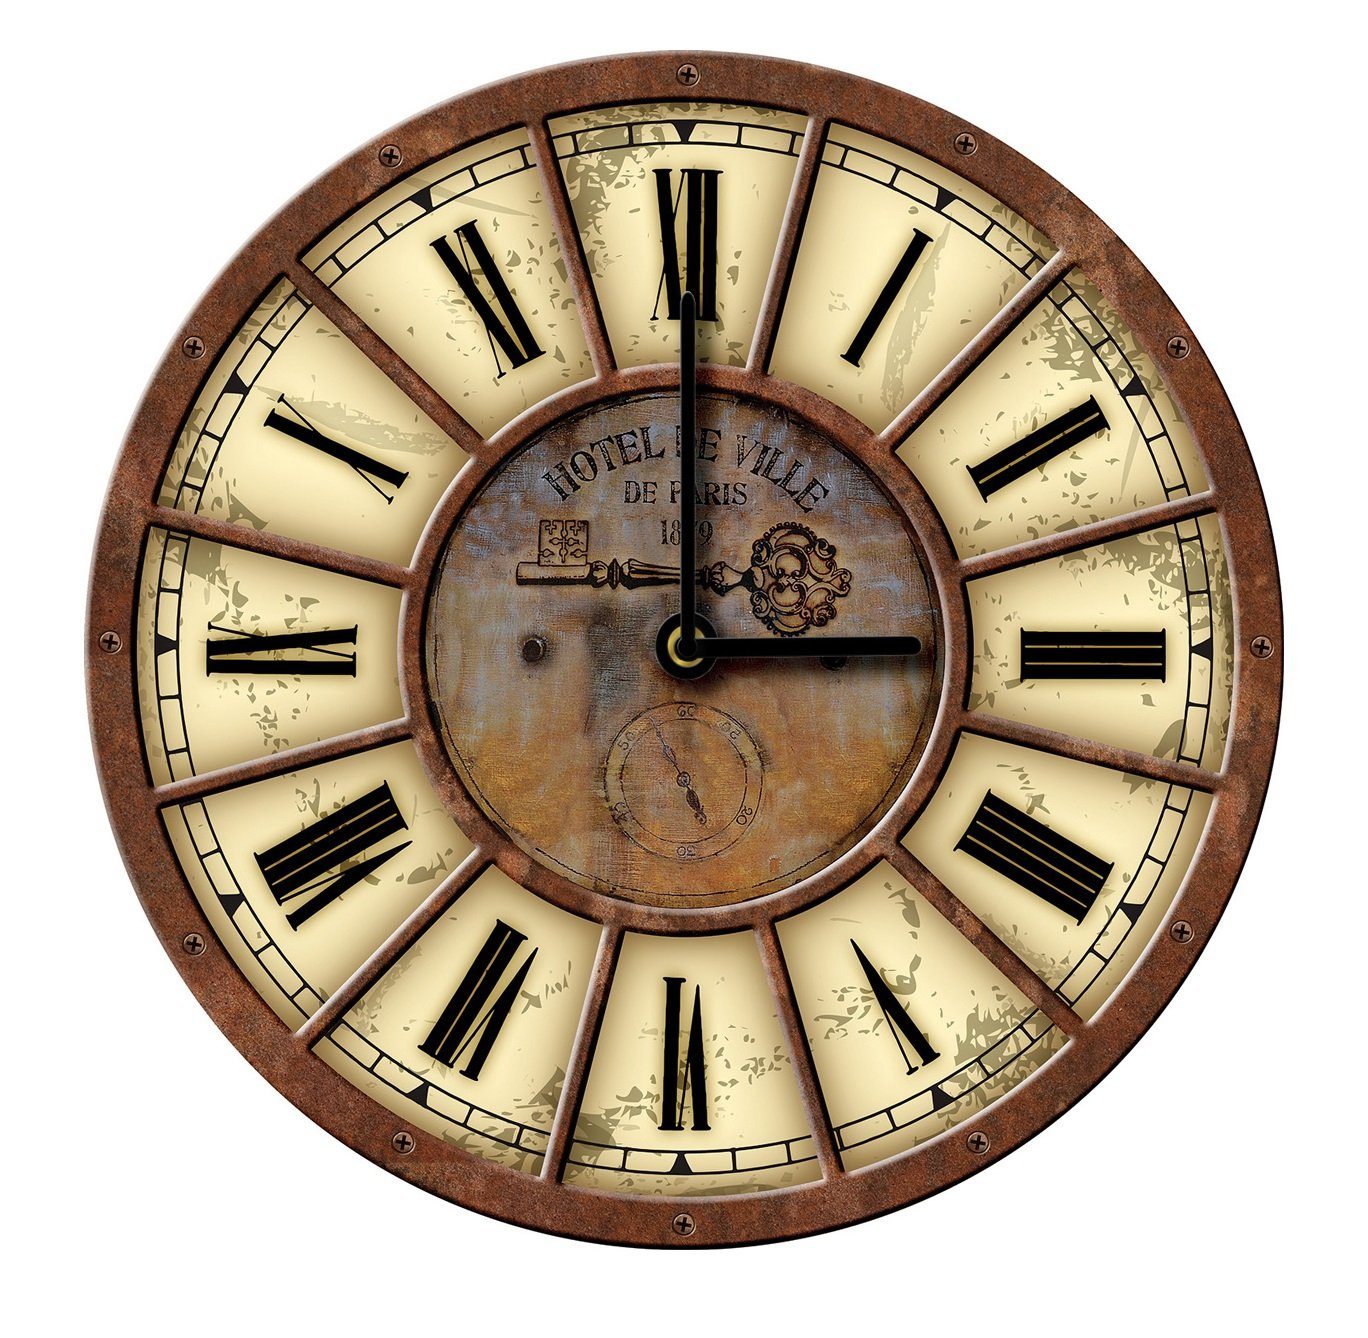 Wallarena Wanduhr Vintage Holz MDF XXL groß Настенные часы Rund Uhr Holzuhr Shabby Chic Wohnzimmer Schlafzimmer Uhrwerk Quartz, 30 oder 50 cm (Wanduhr Auf Holz)